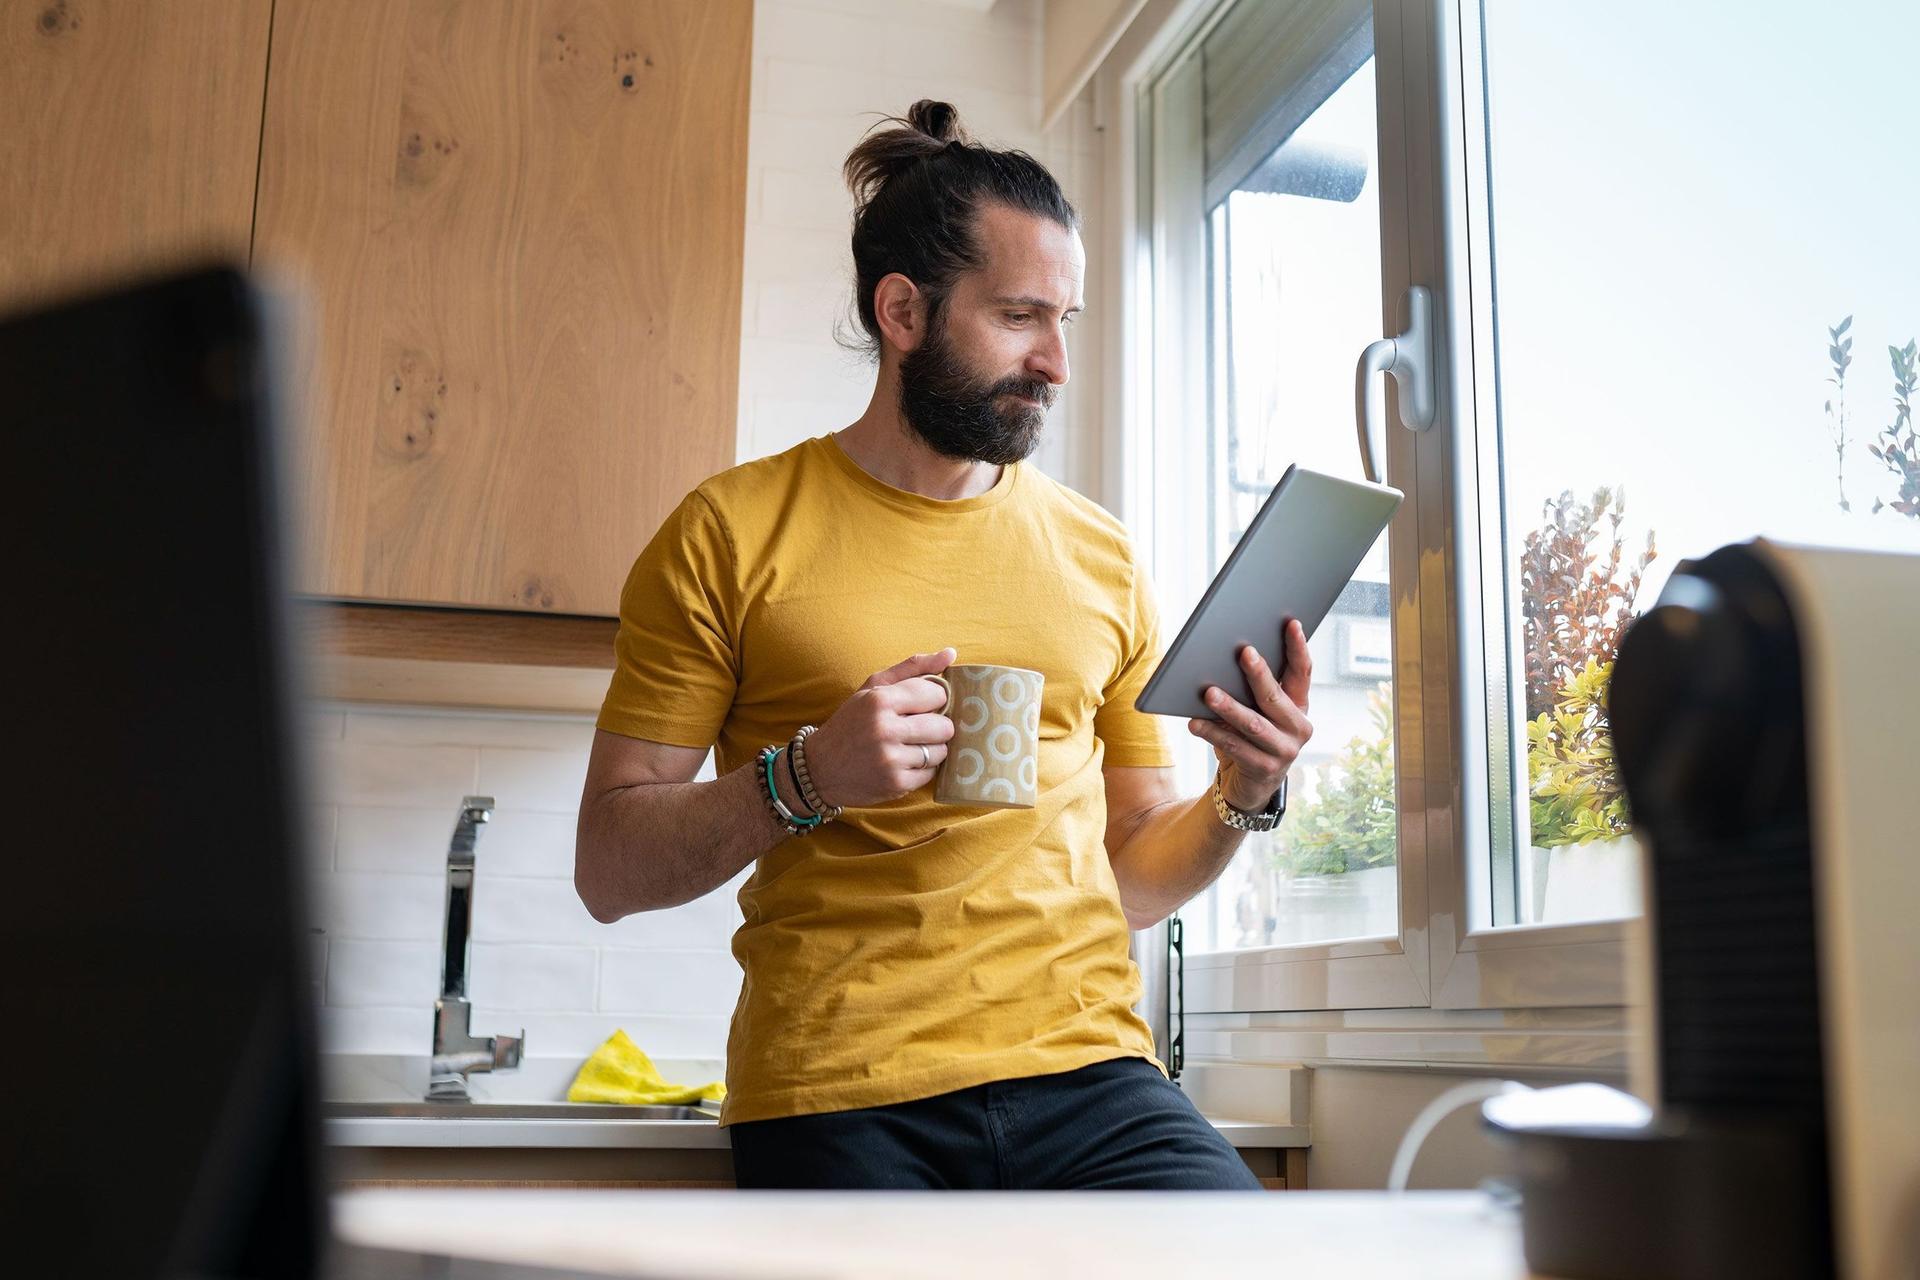 Ein junger Mann lehnt mit einem Kaffeebecher an einer Küchenzeile neben dem Fenster. Er schaut konzentriert auf ein Tablet in seiner Hand.